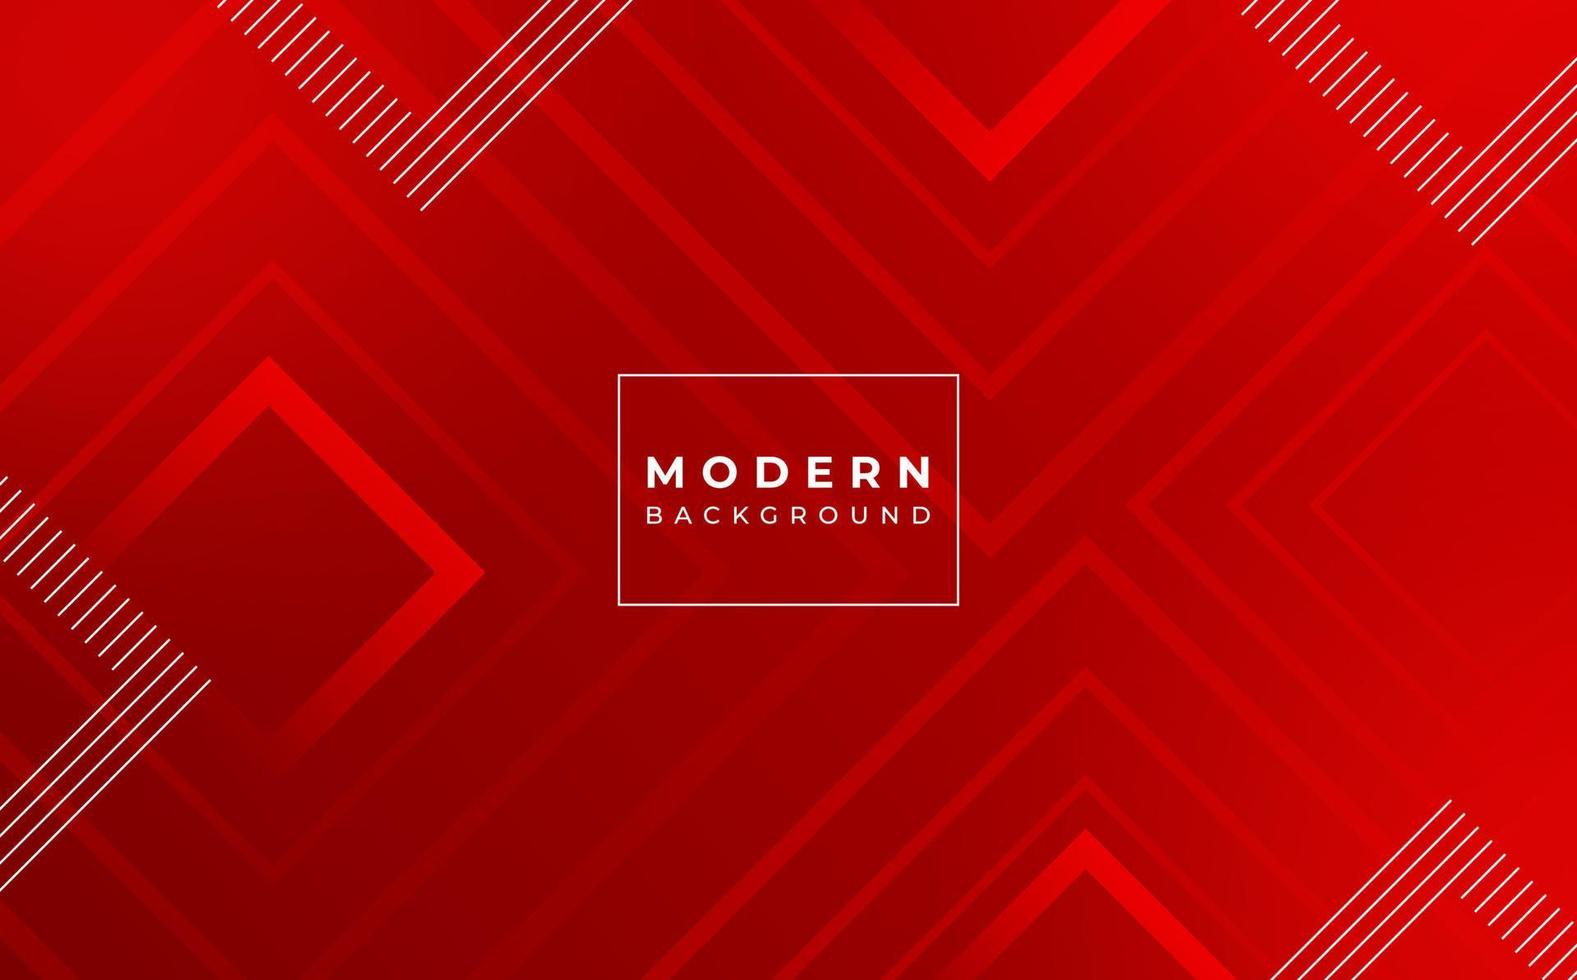 moderne arrière-plan, abstrait géométrique style, rouge gradation, memphis eps dix vecteur